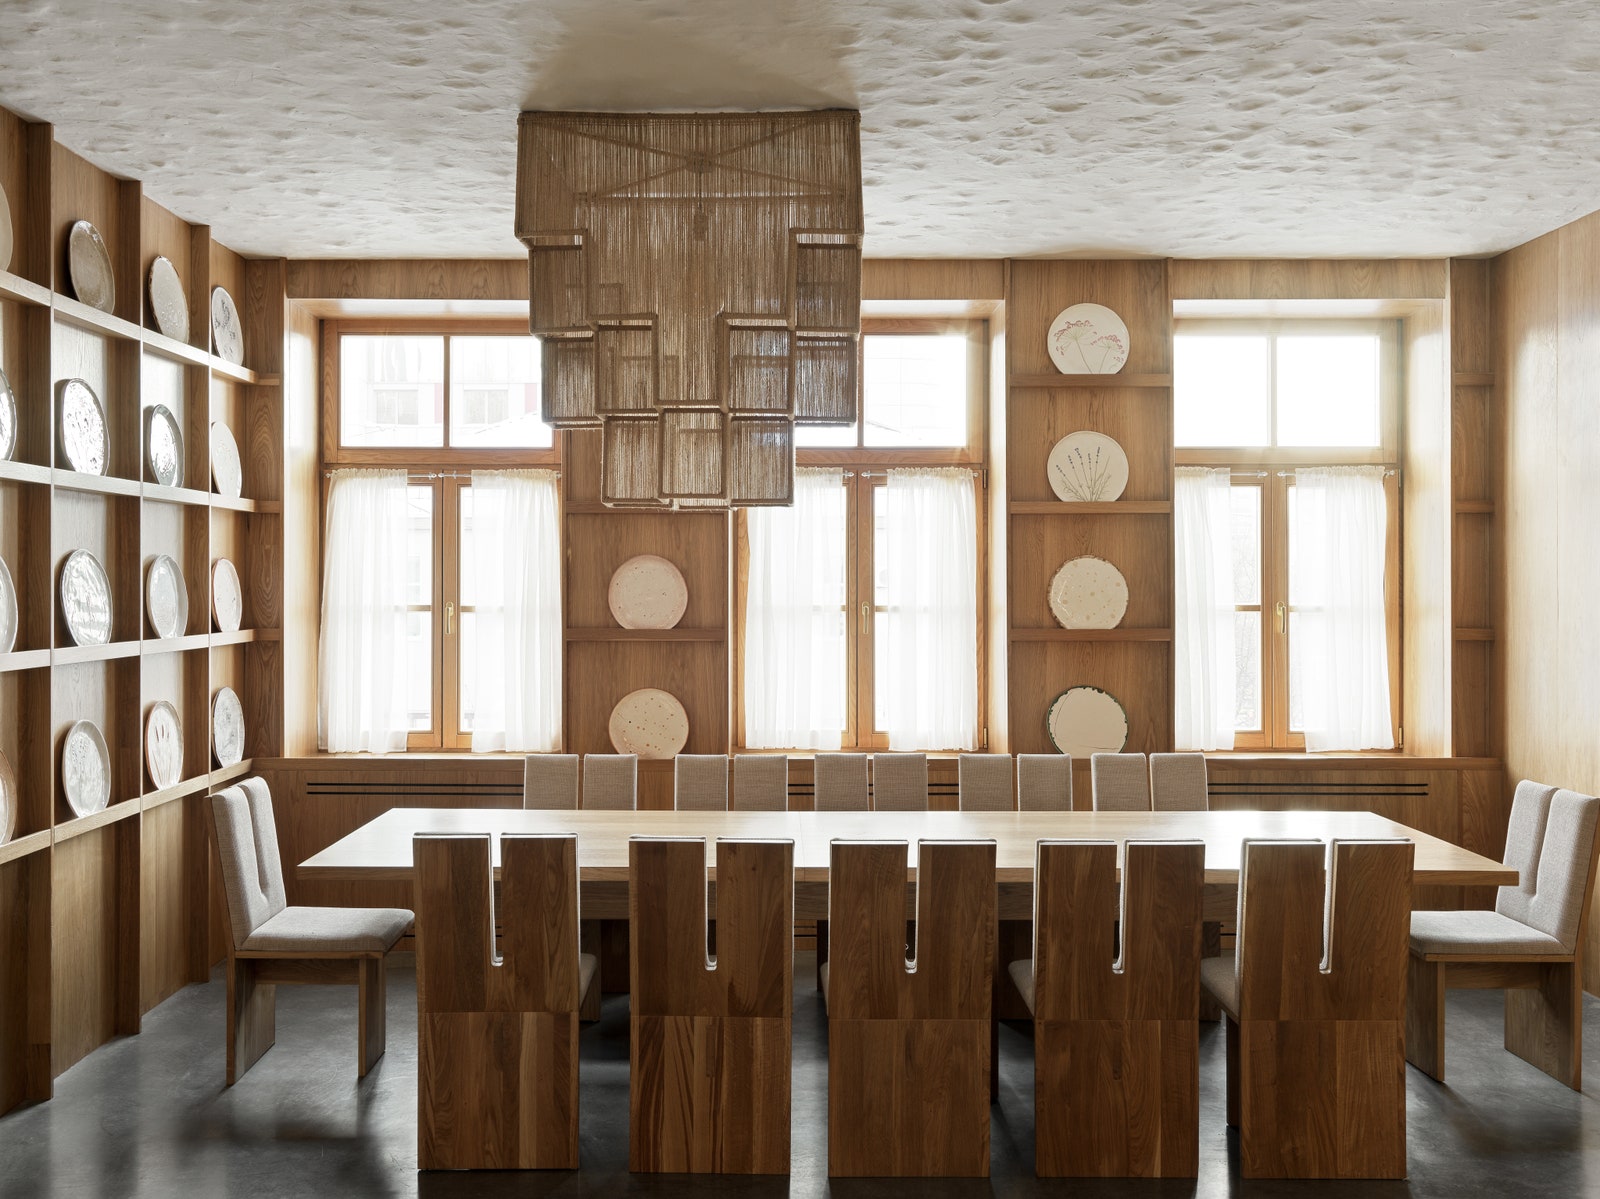 Ресторан “Дом” по проекту Megre Interiors в Хабаровске